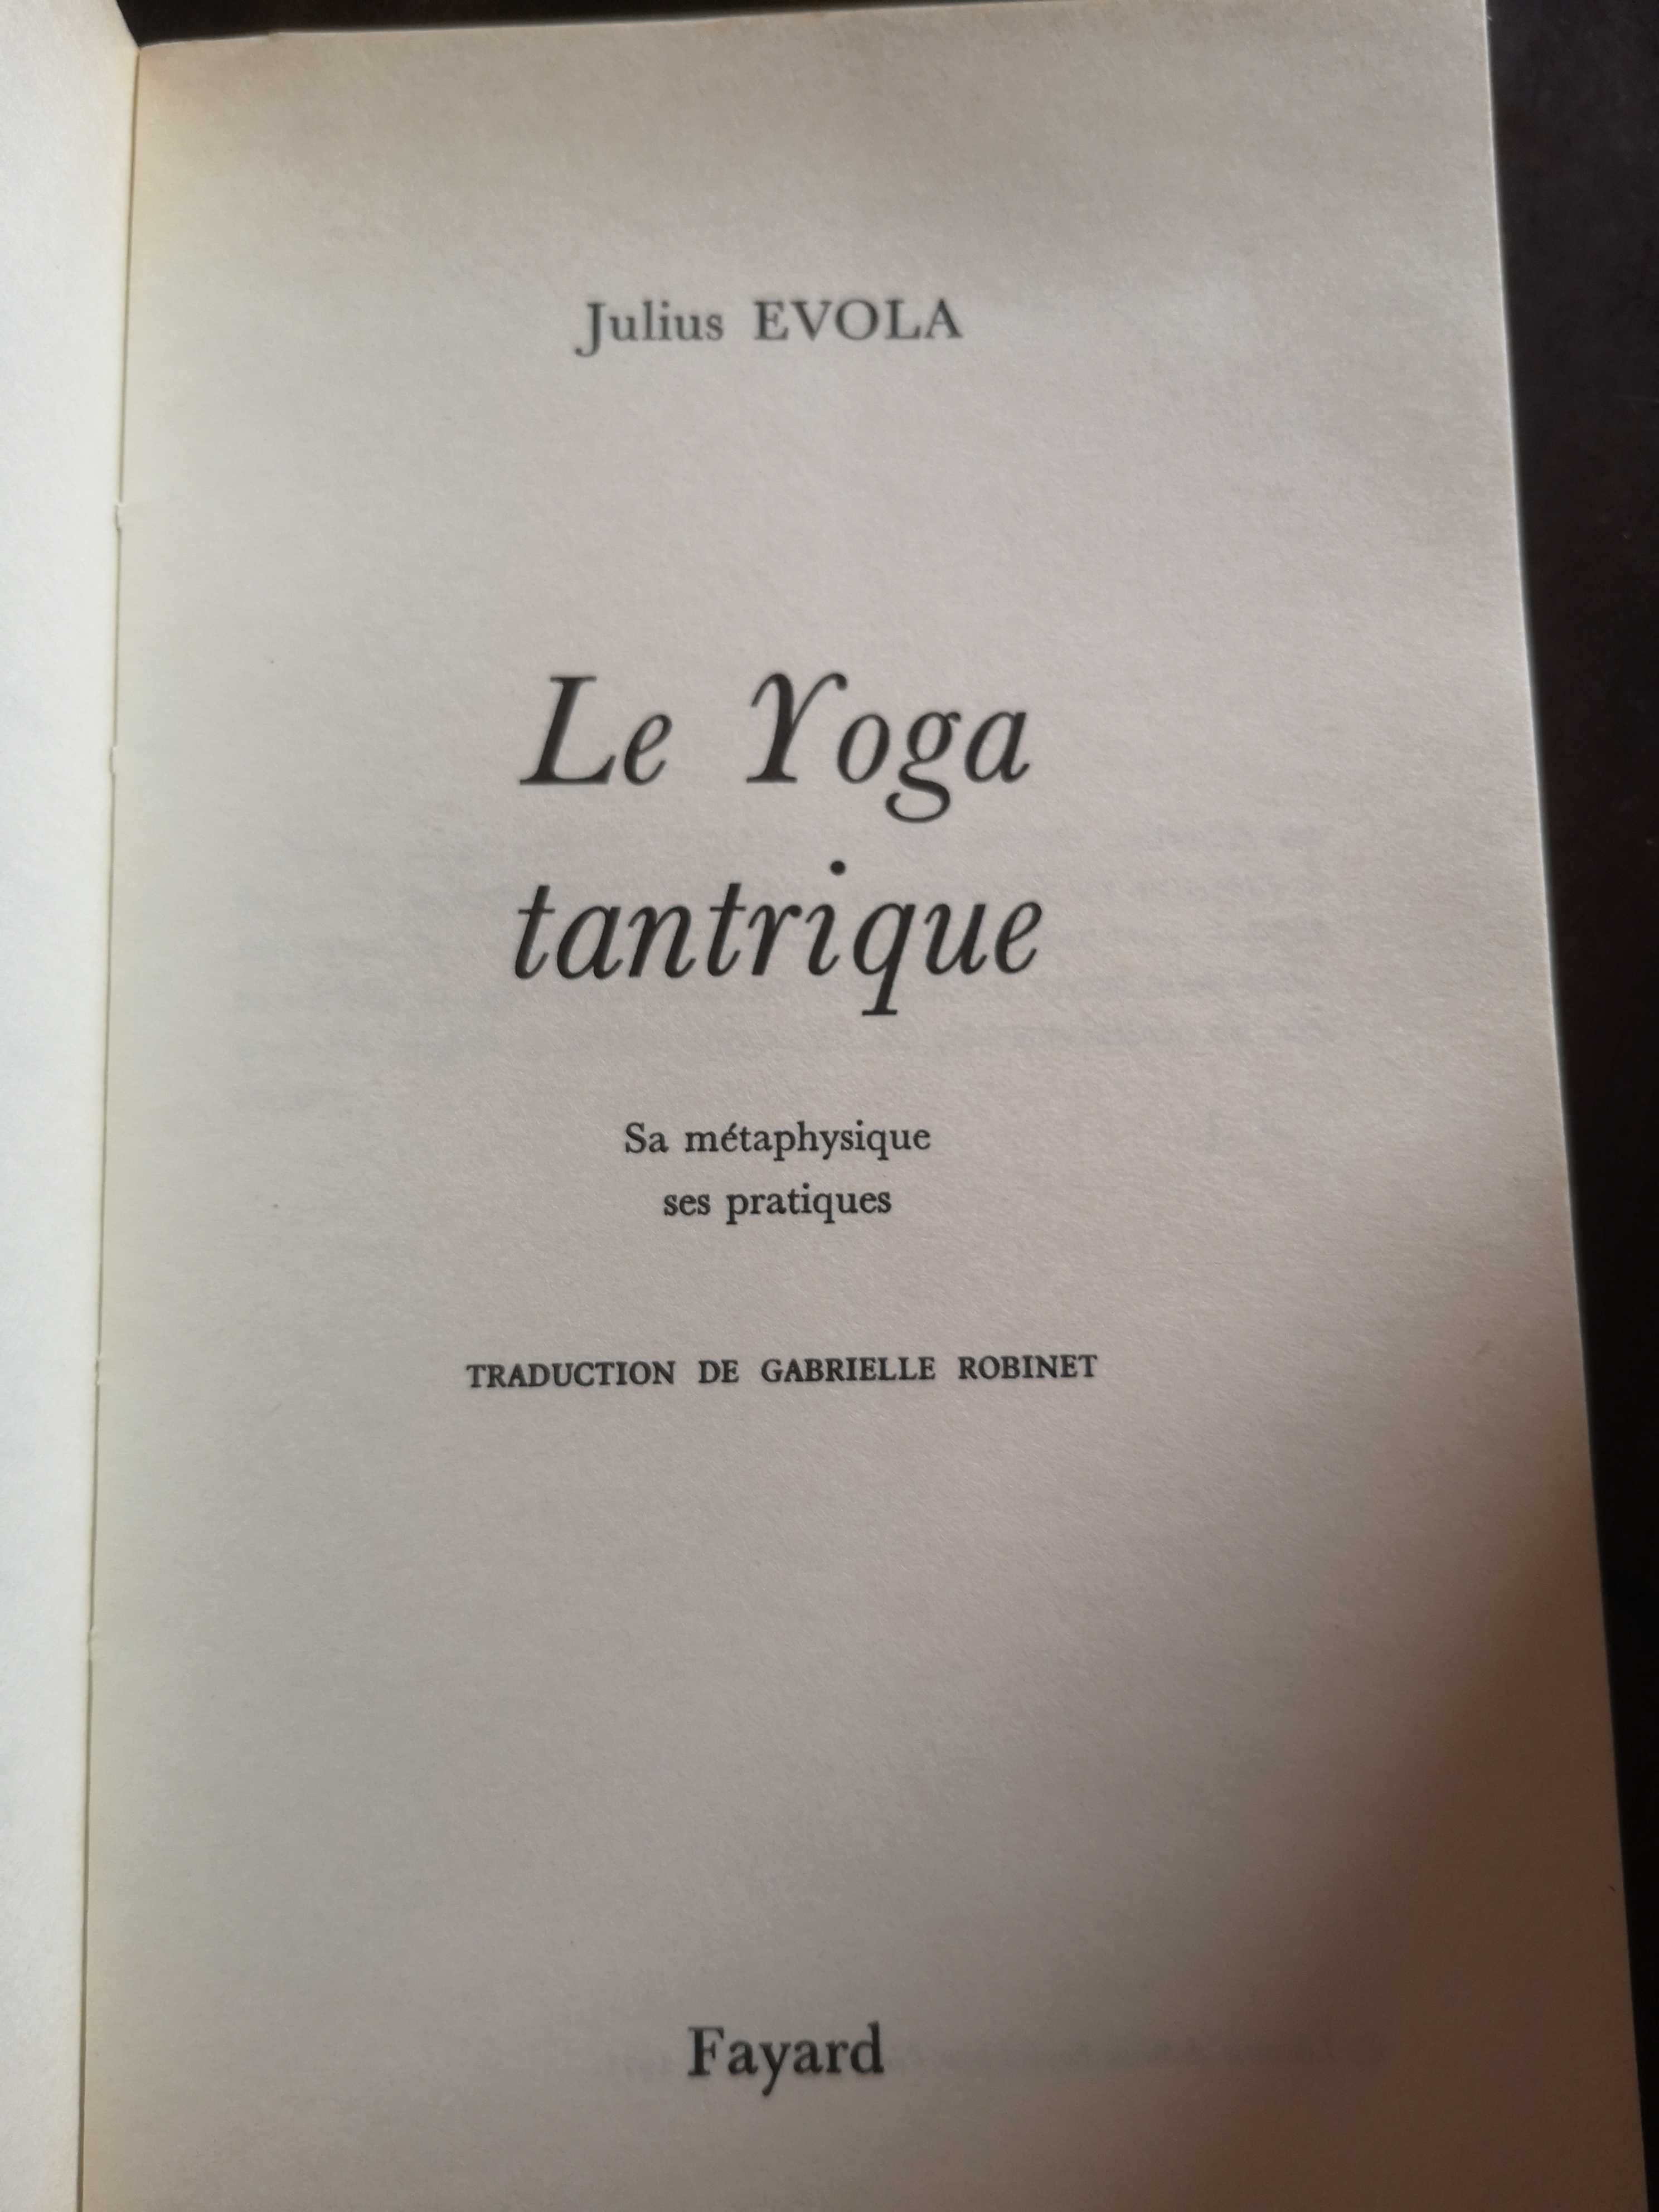 Livro "Le Yoga tantrique"